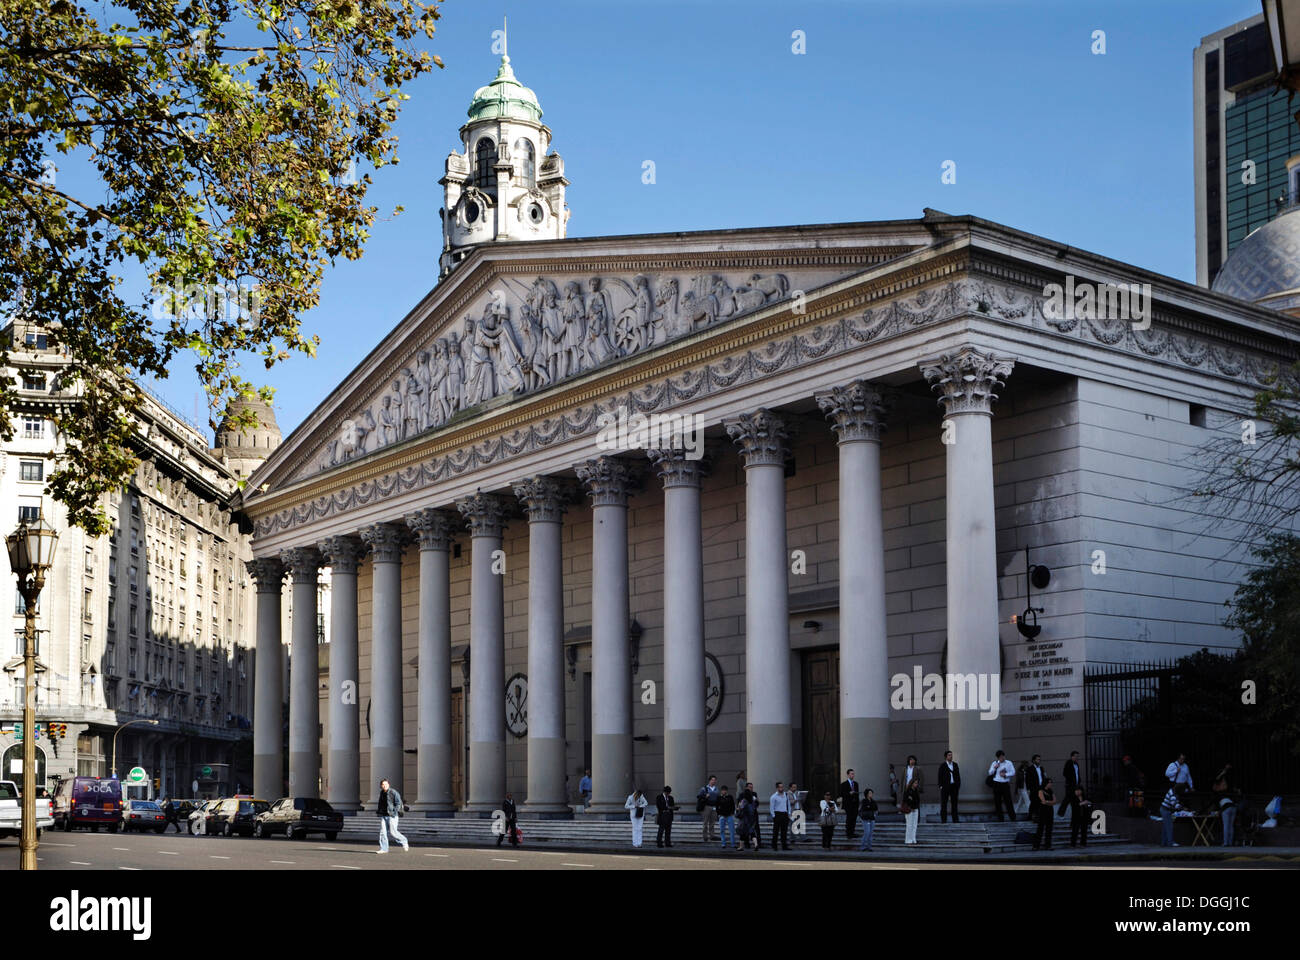 Die Buenos Aires Metropolitankathedrale am Plaza de Mayo Platz, Montserrat Bezirk, Buenos Aires, Argentinien, Südamerika Stockfoto